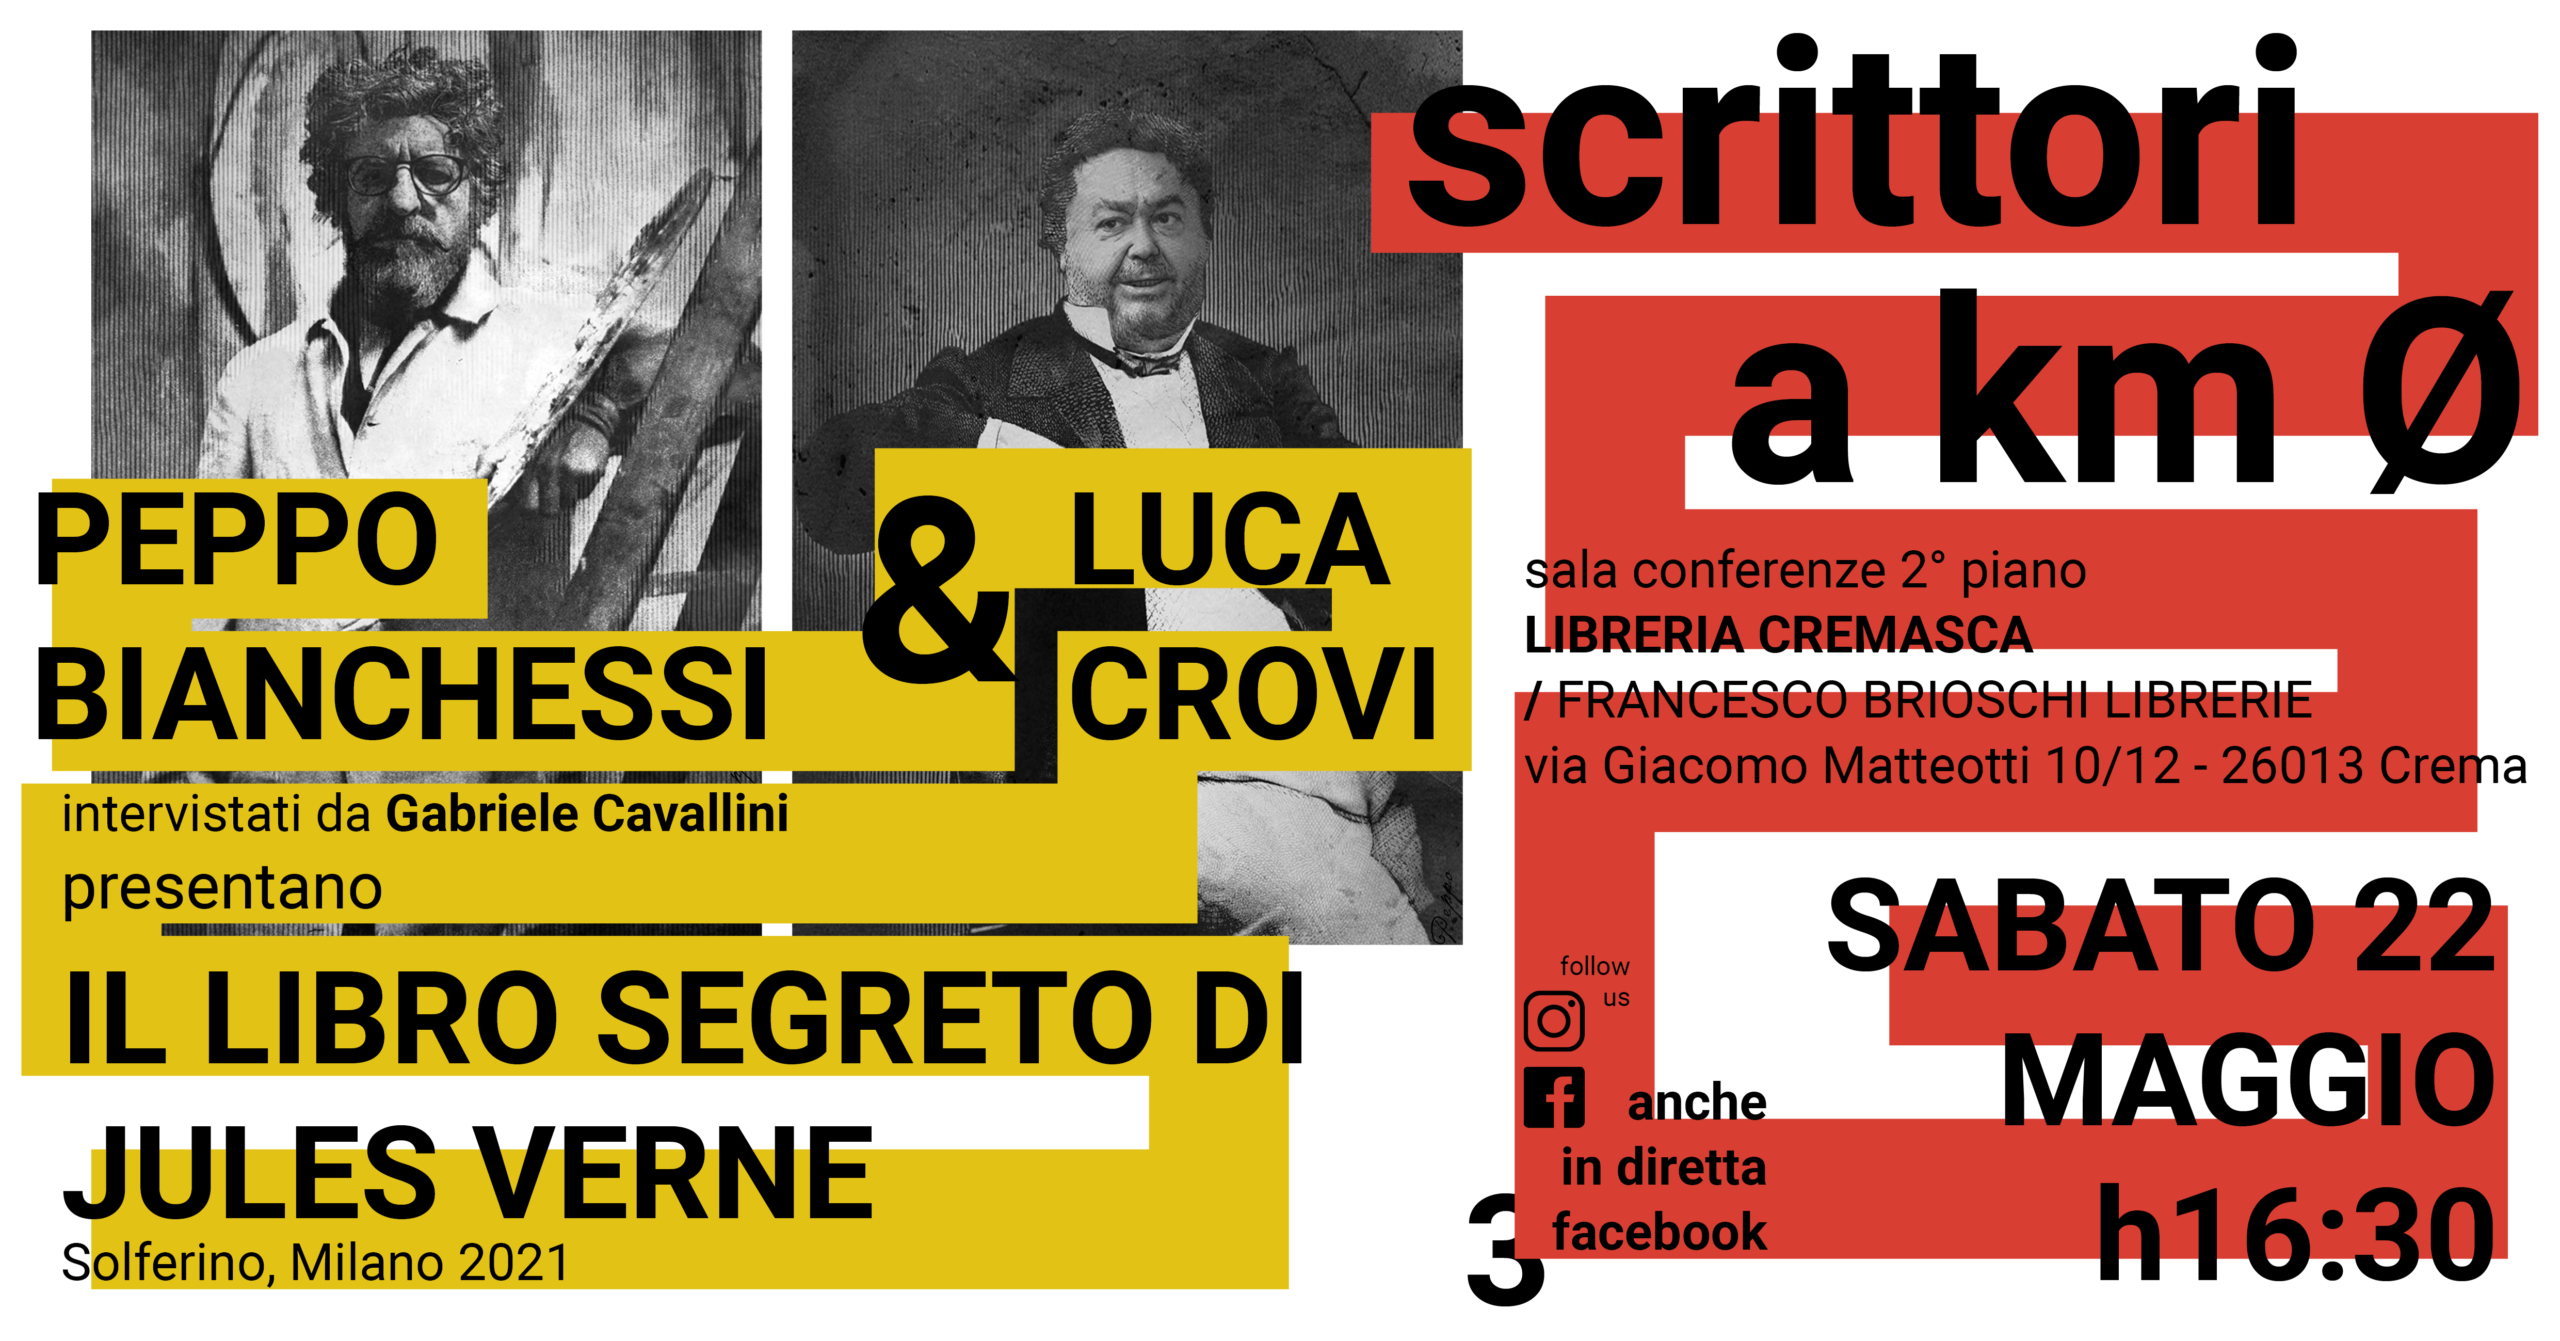 Scrittori a km 0: Peppo Bianchessi e Luca Crovi